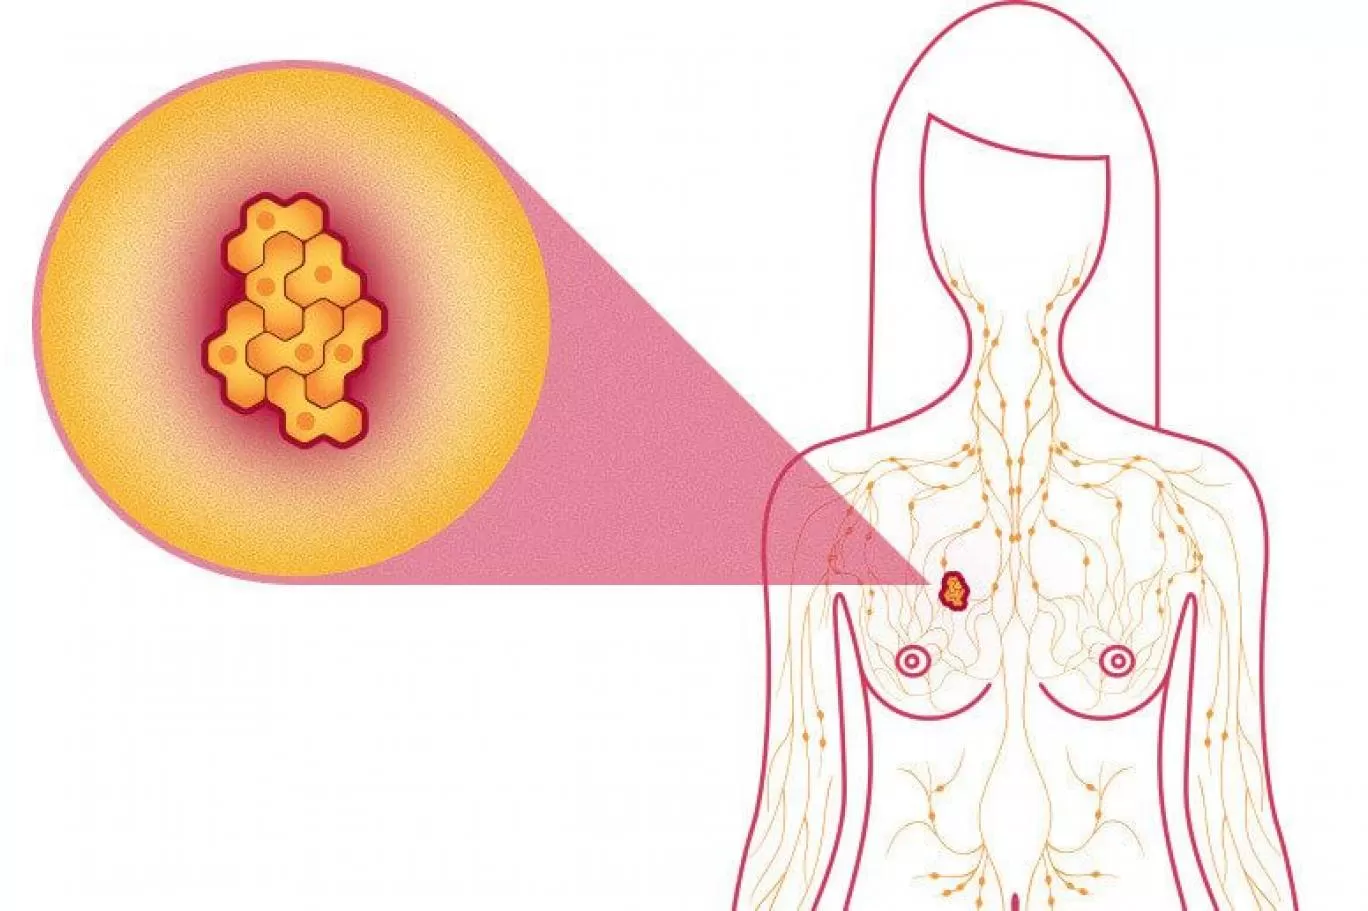 نظام التغذية الخاطئ تؤدي الى سرطان الثدي